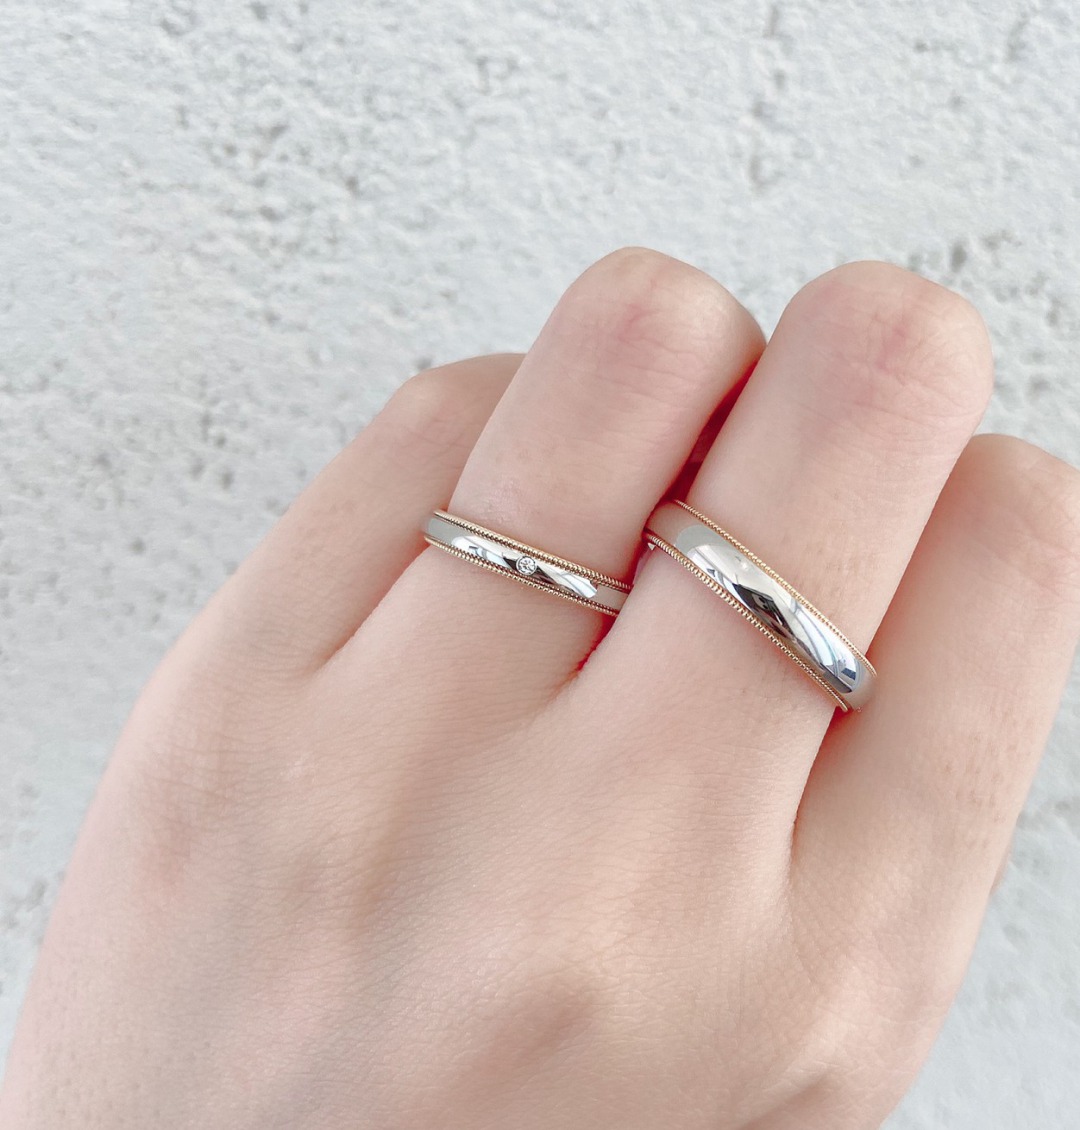 ミルグレインが美しいアンティーク調のシンプル結婚指輪